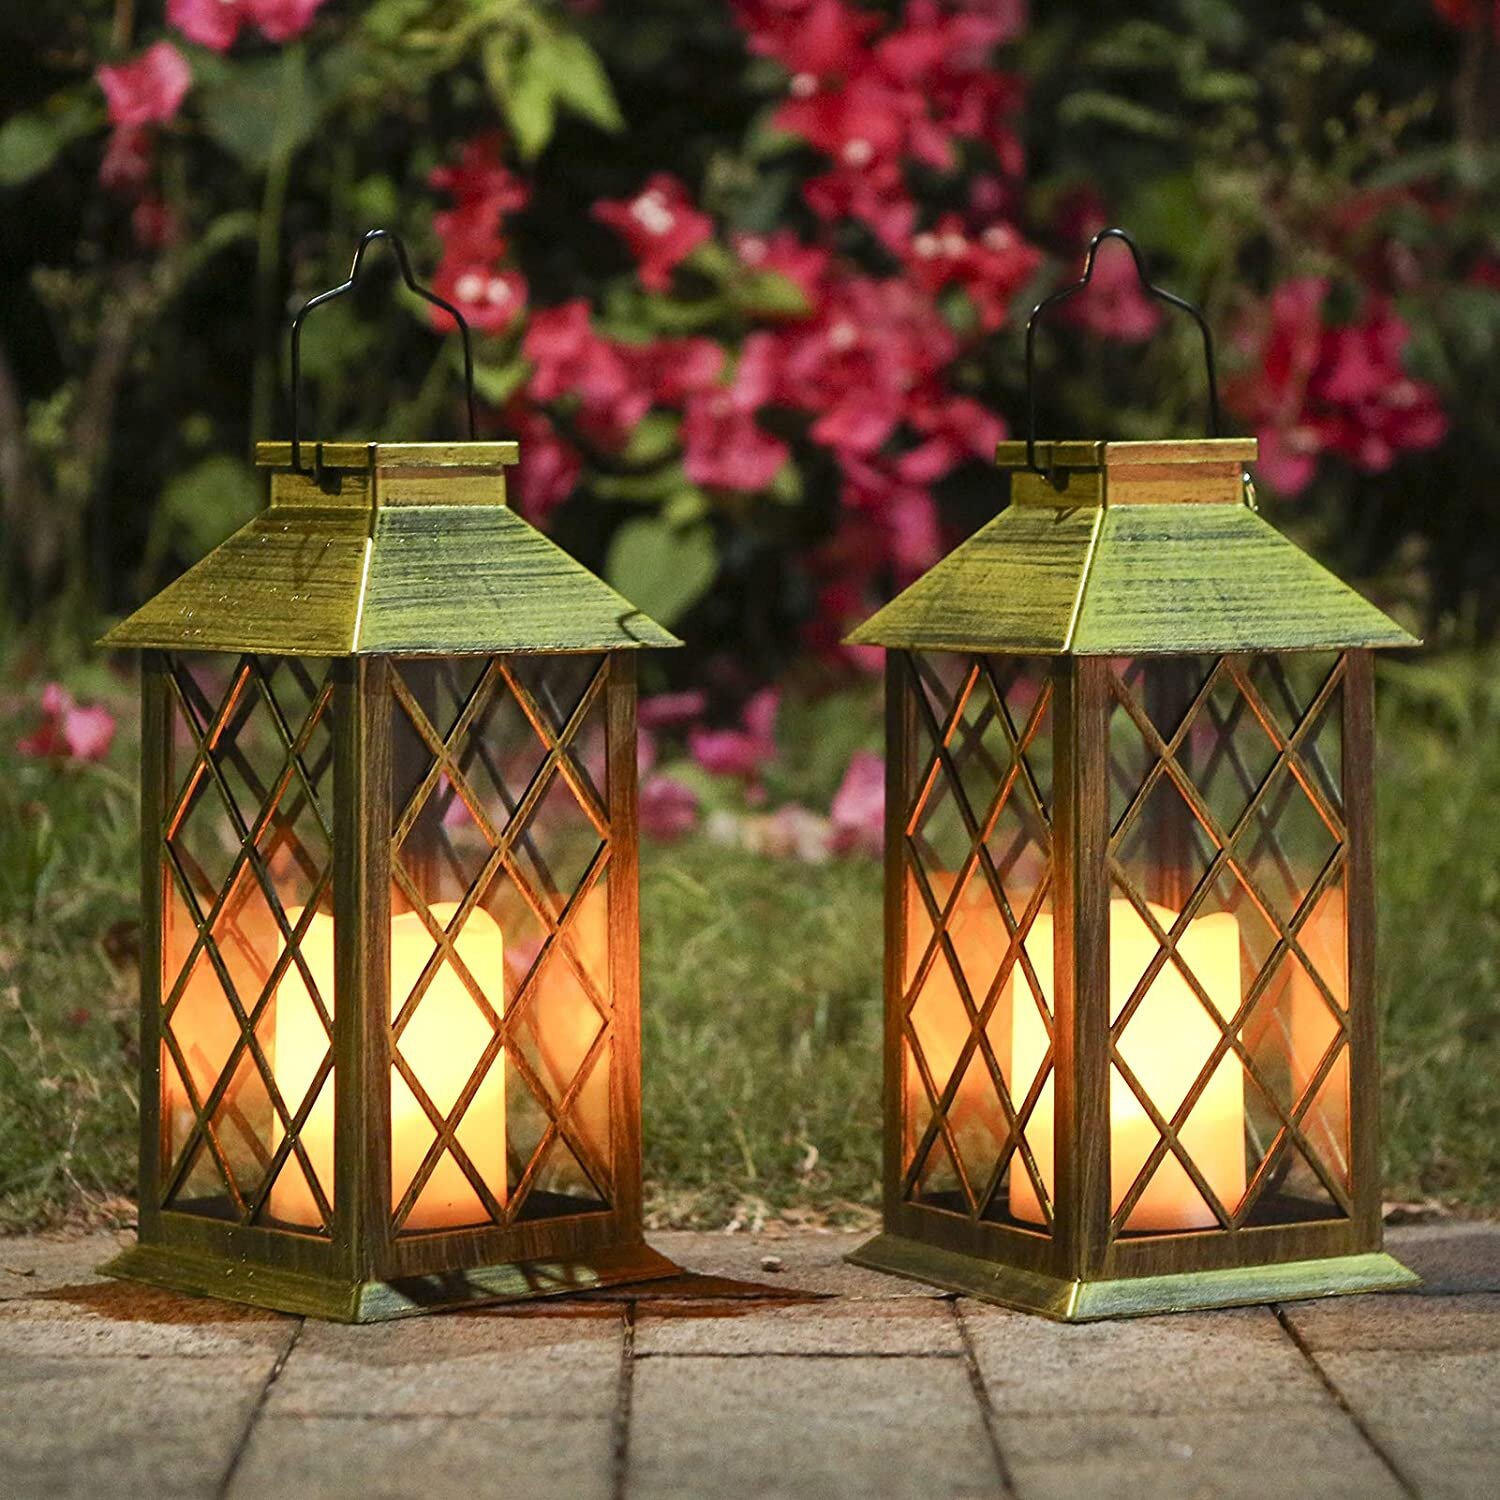 Pair of 2 Hanging Solar Powered Garden Lanterns